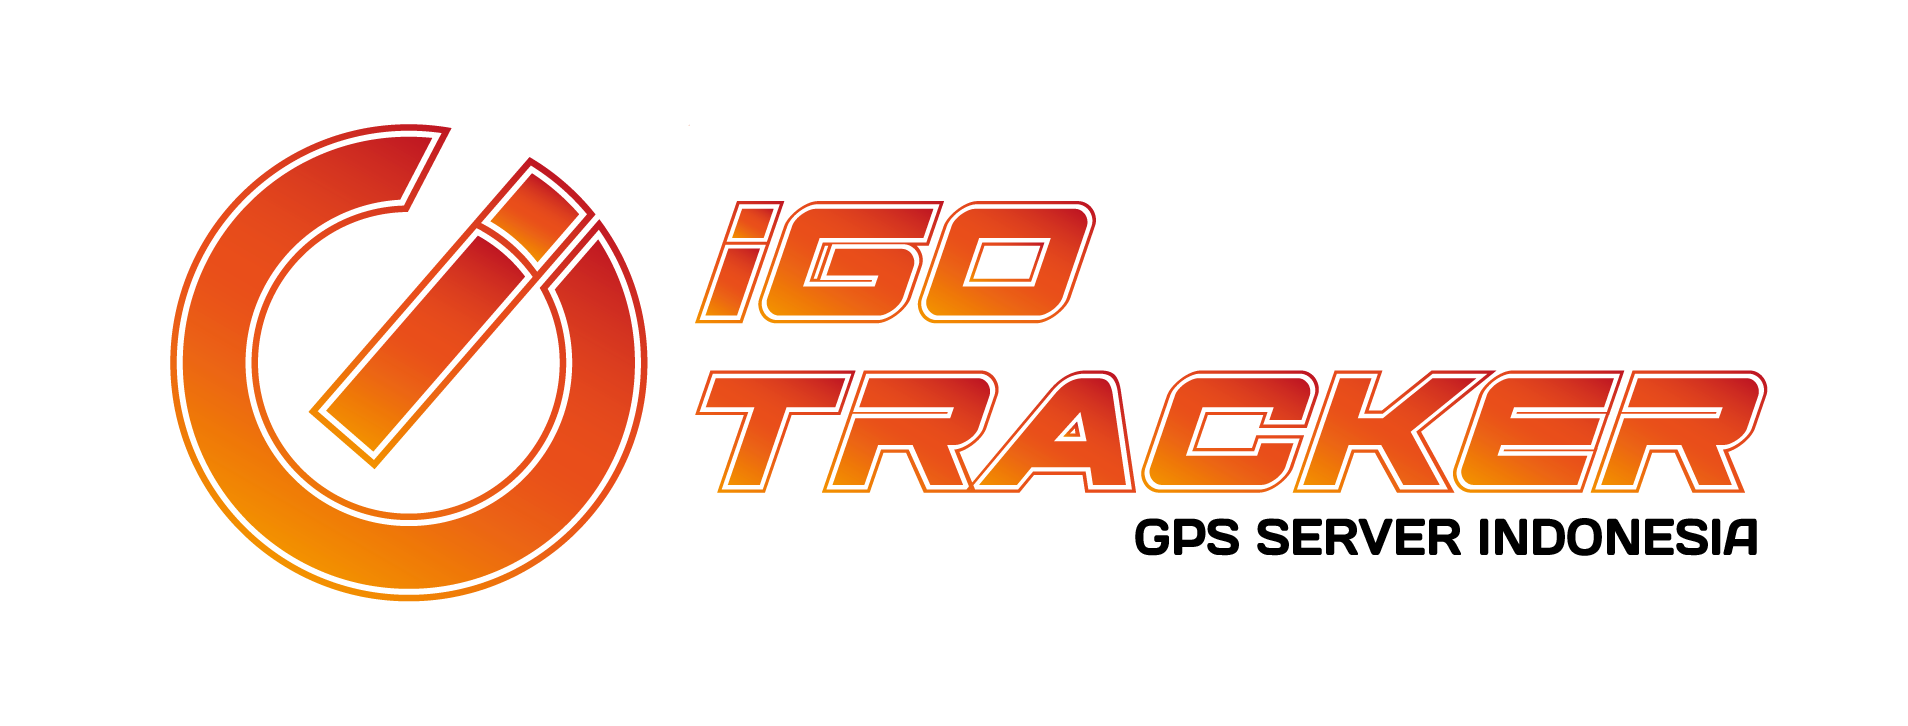 igo tracker logo